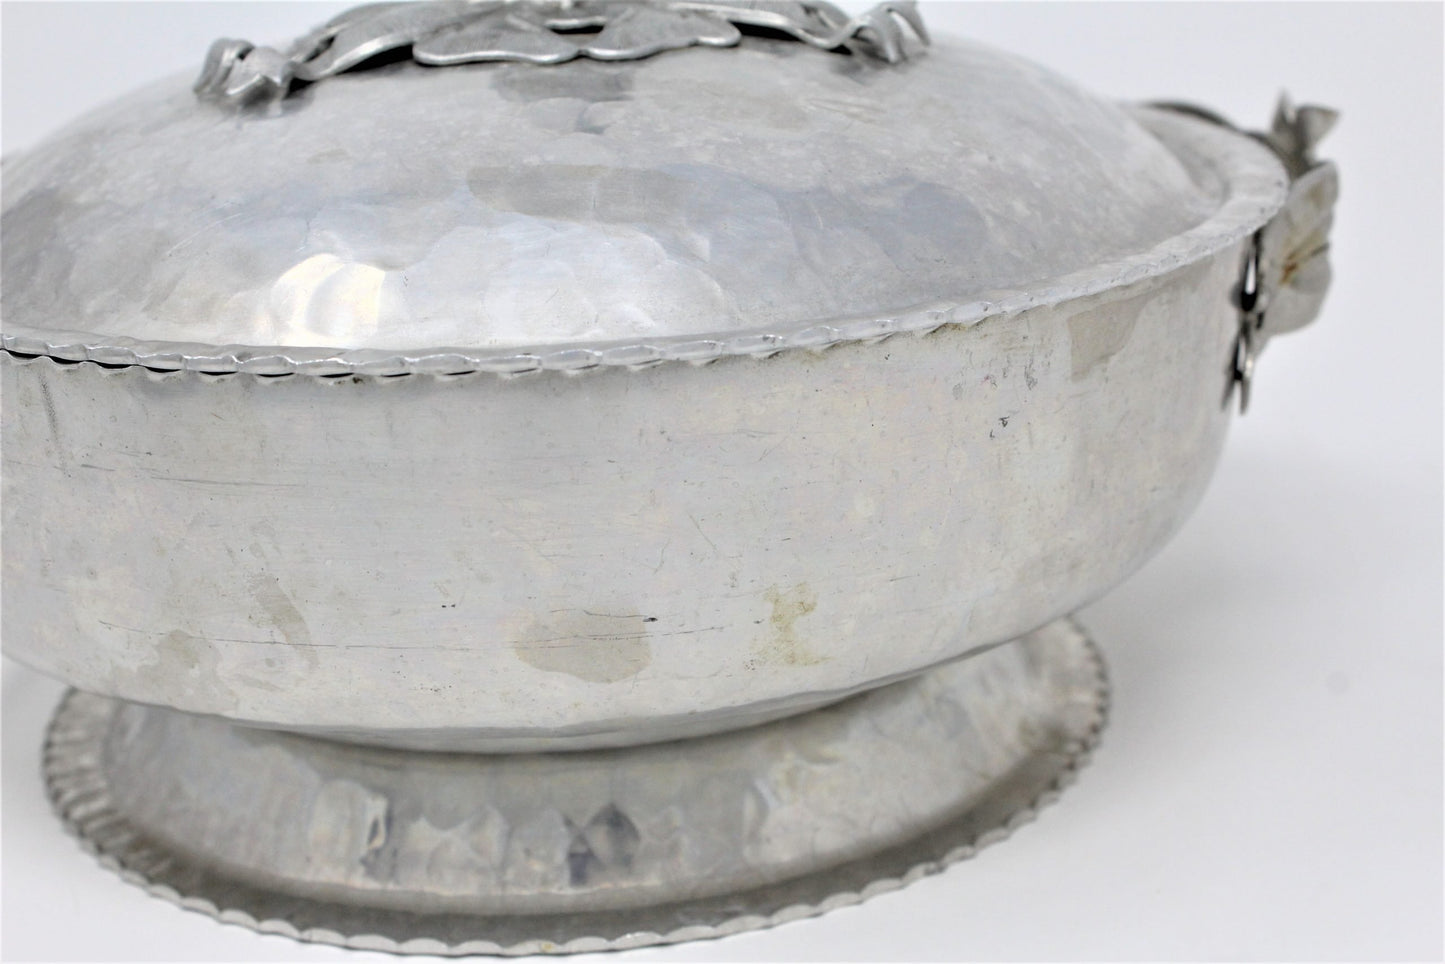 Serving Bowl with Lid, Rodney Kent Hammered Aluminum 2Qt, Vintage